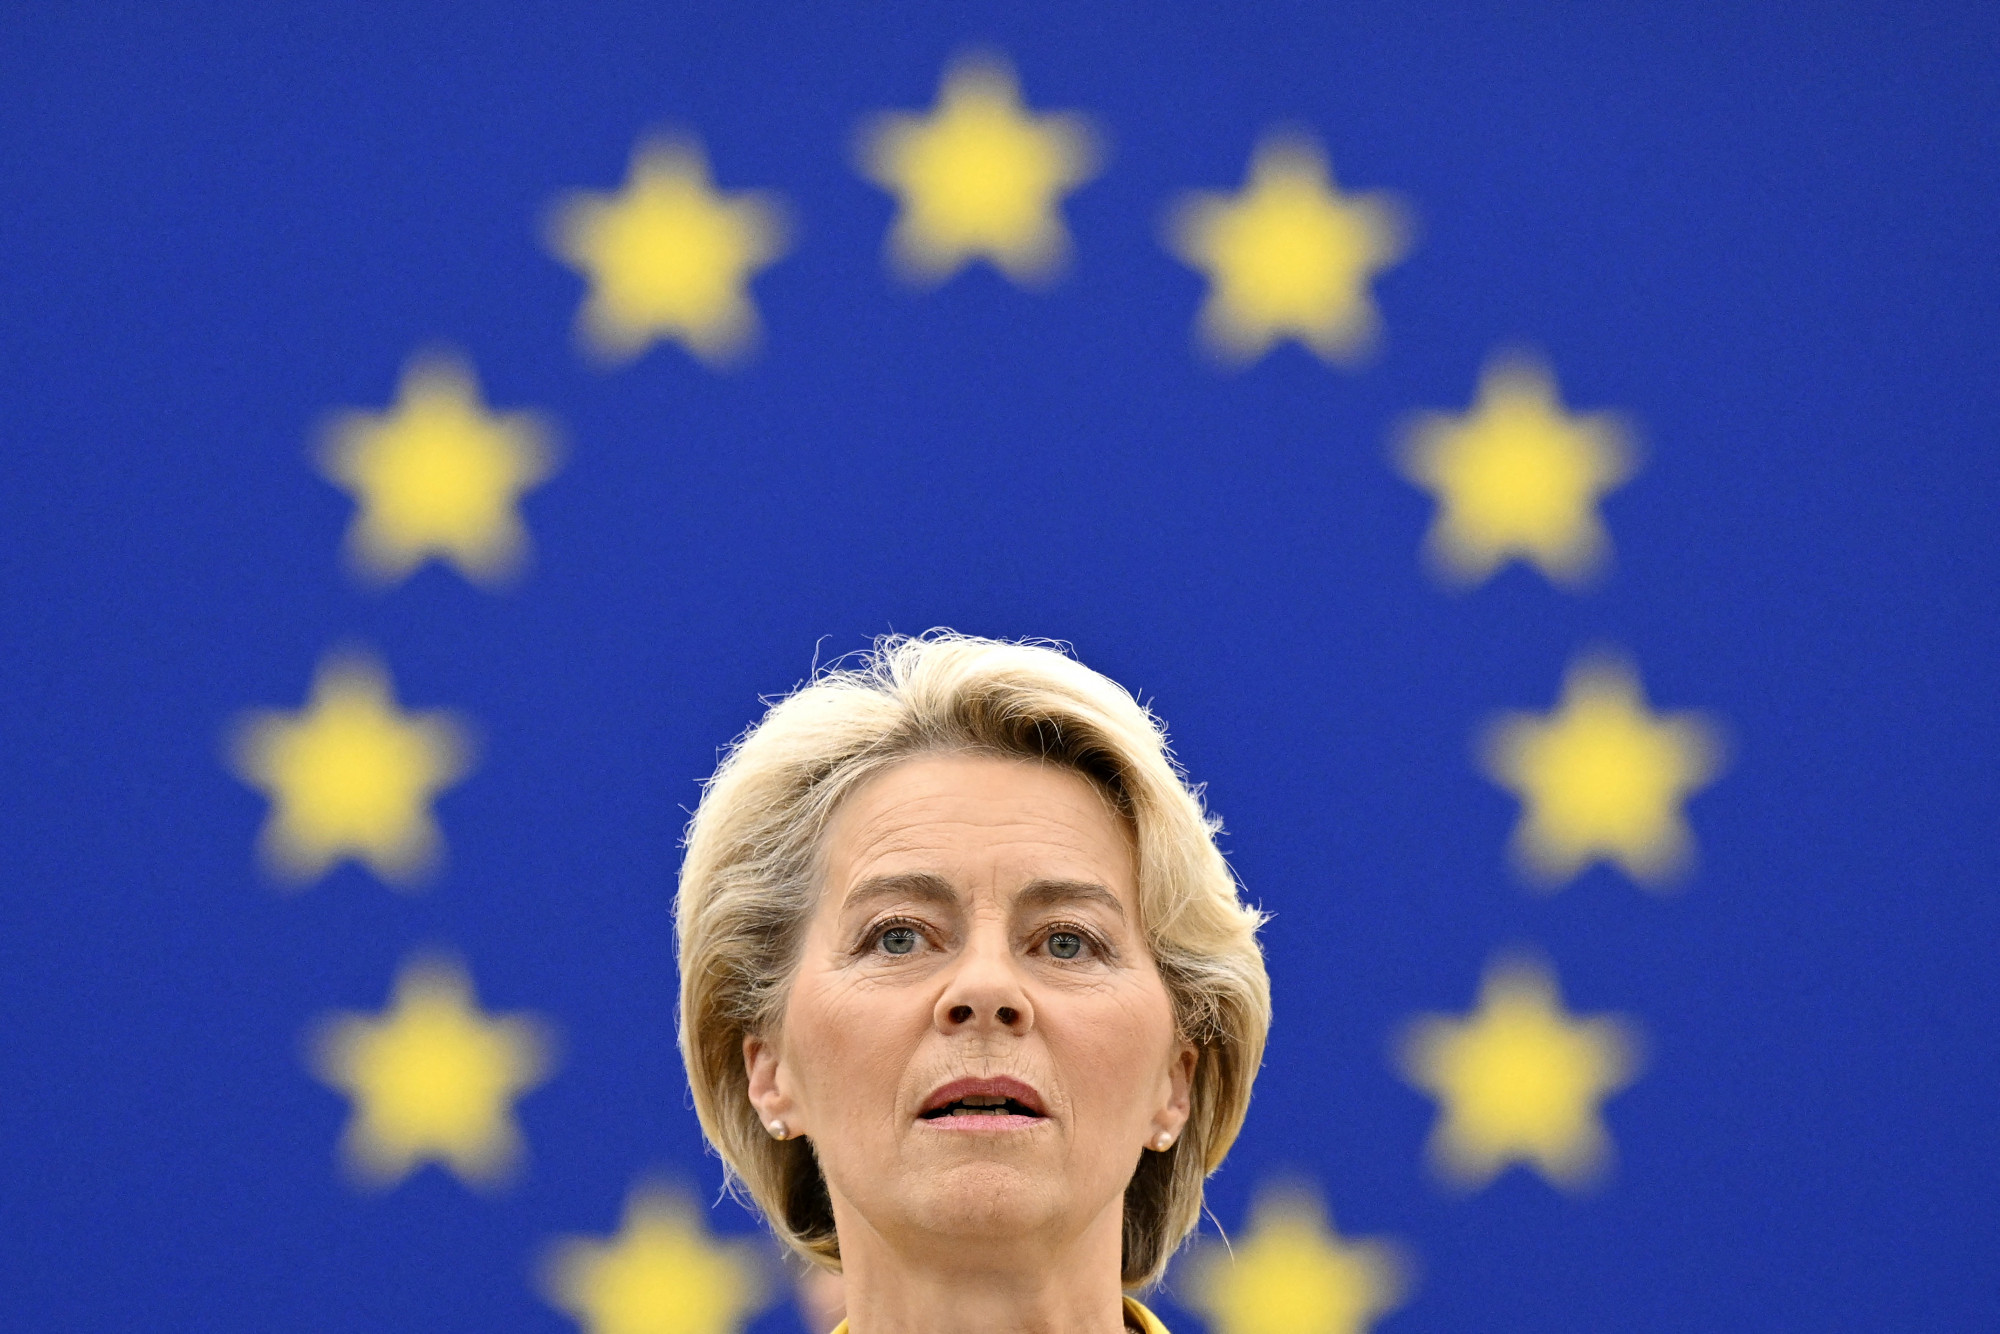 6400 milliárd forintnyi uniós támogatás visszatartását javasolhatja az Európai Bizottság a Reuters információi szerint